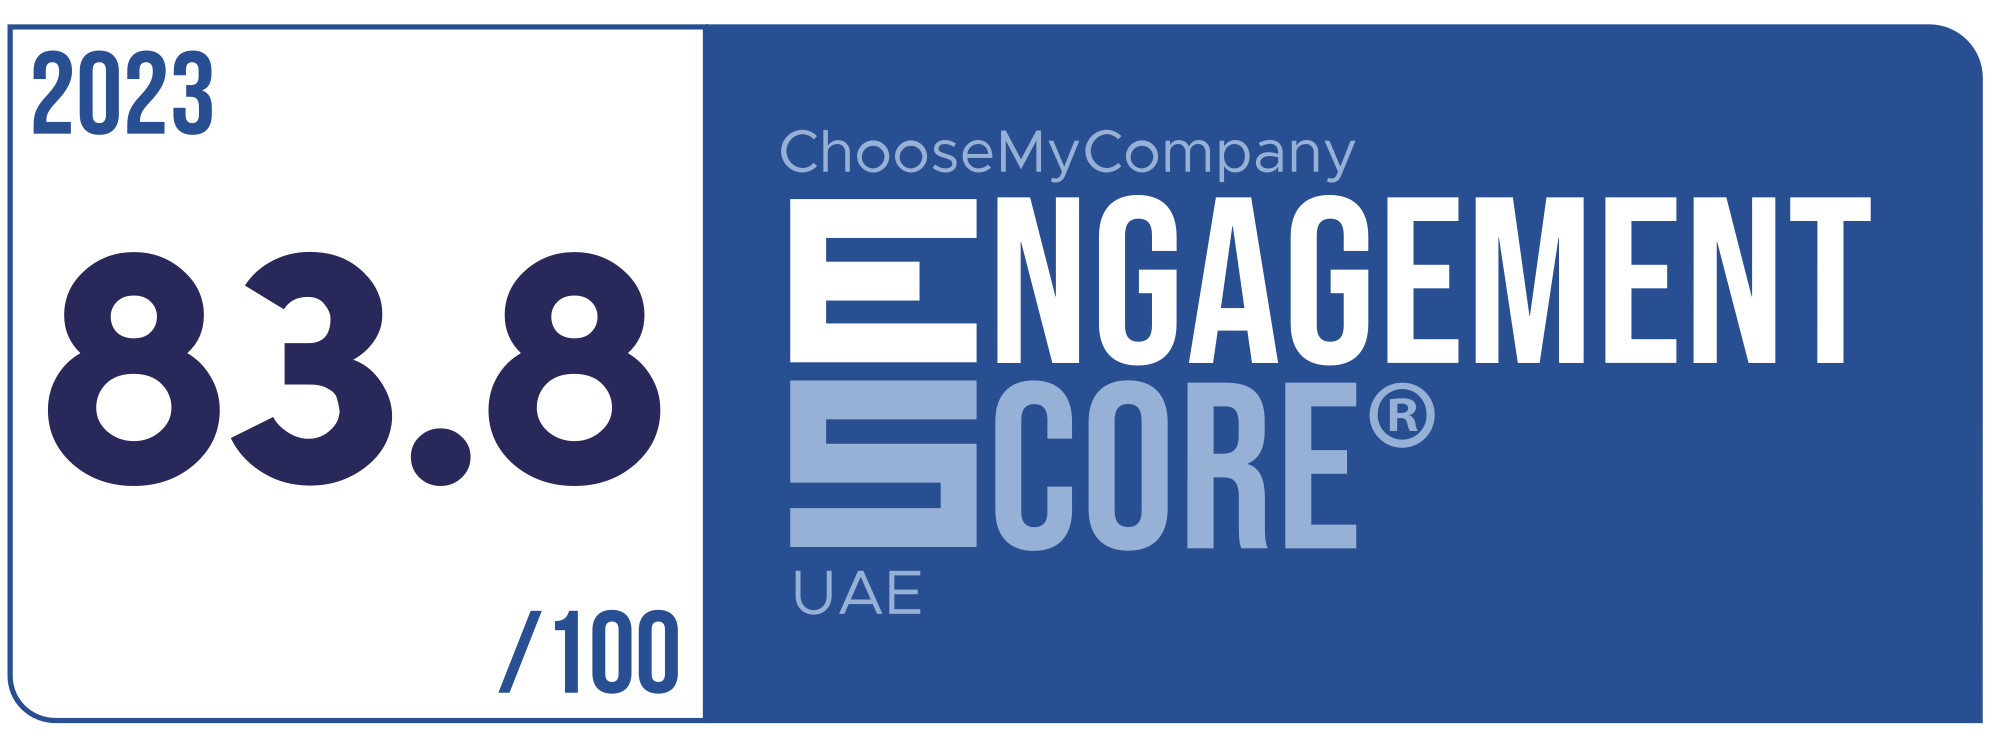 Label Engagement Score 2023 UAE